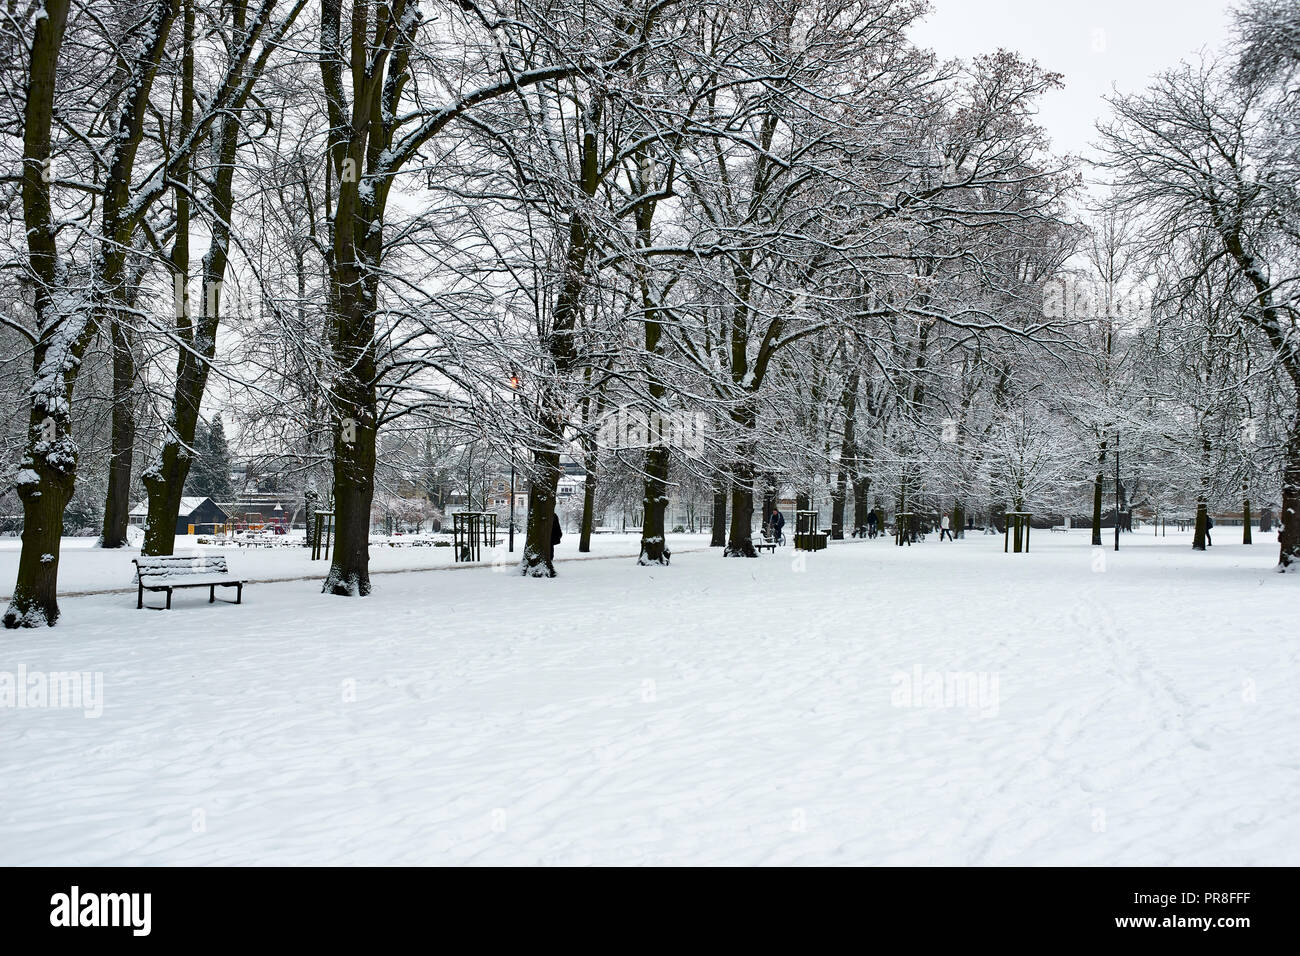 Escena de Invierno en Cambridge - piezas de Cristo. La nieve cubrió el césped y jardín, avenida de árboles y bancos. Foto de stock